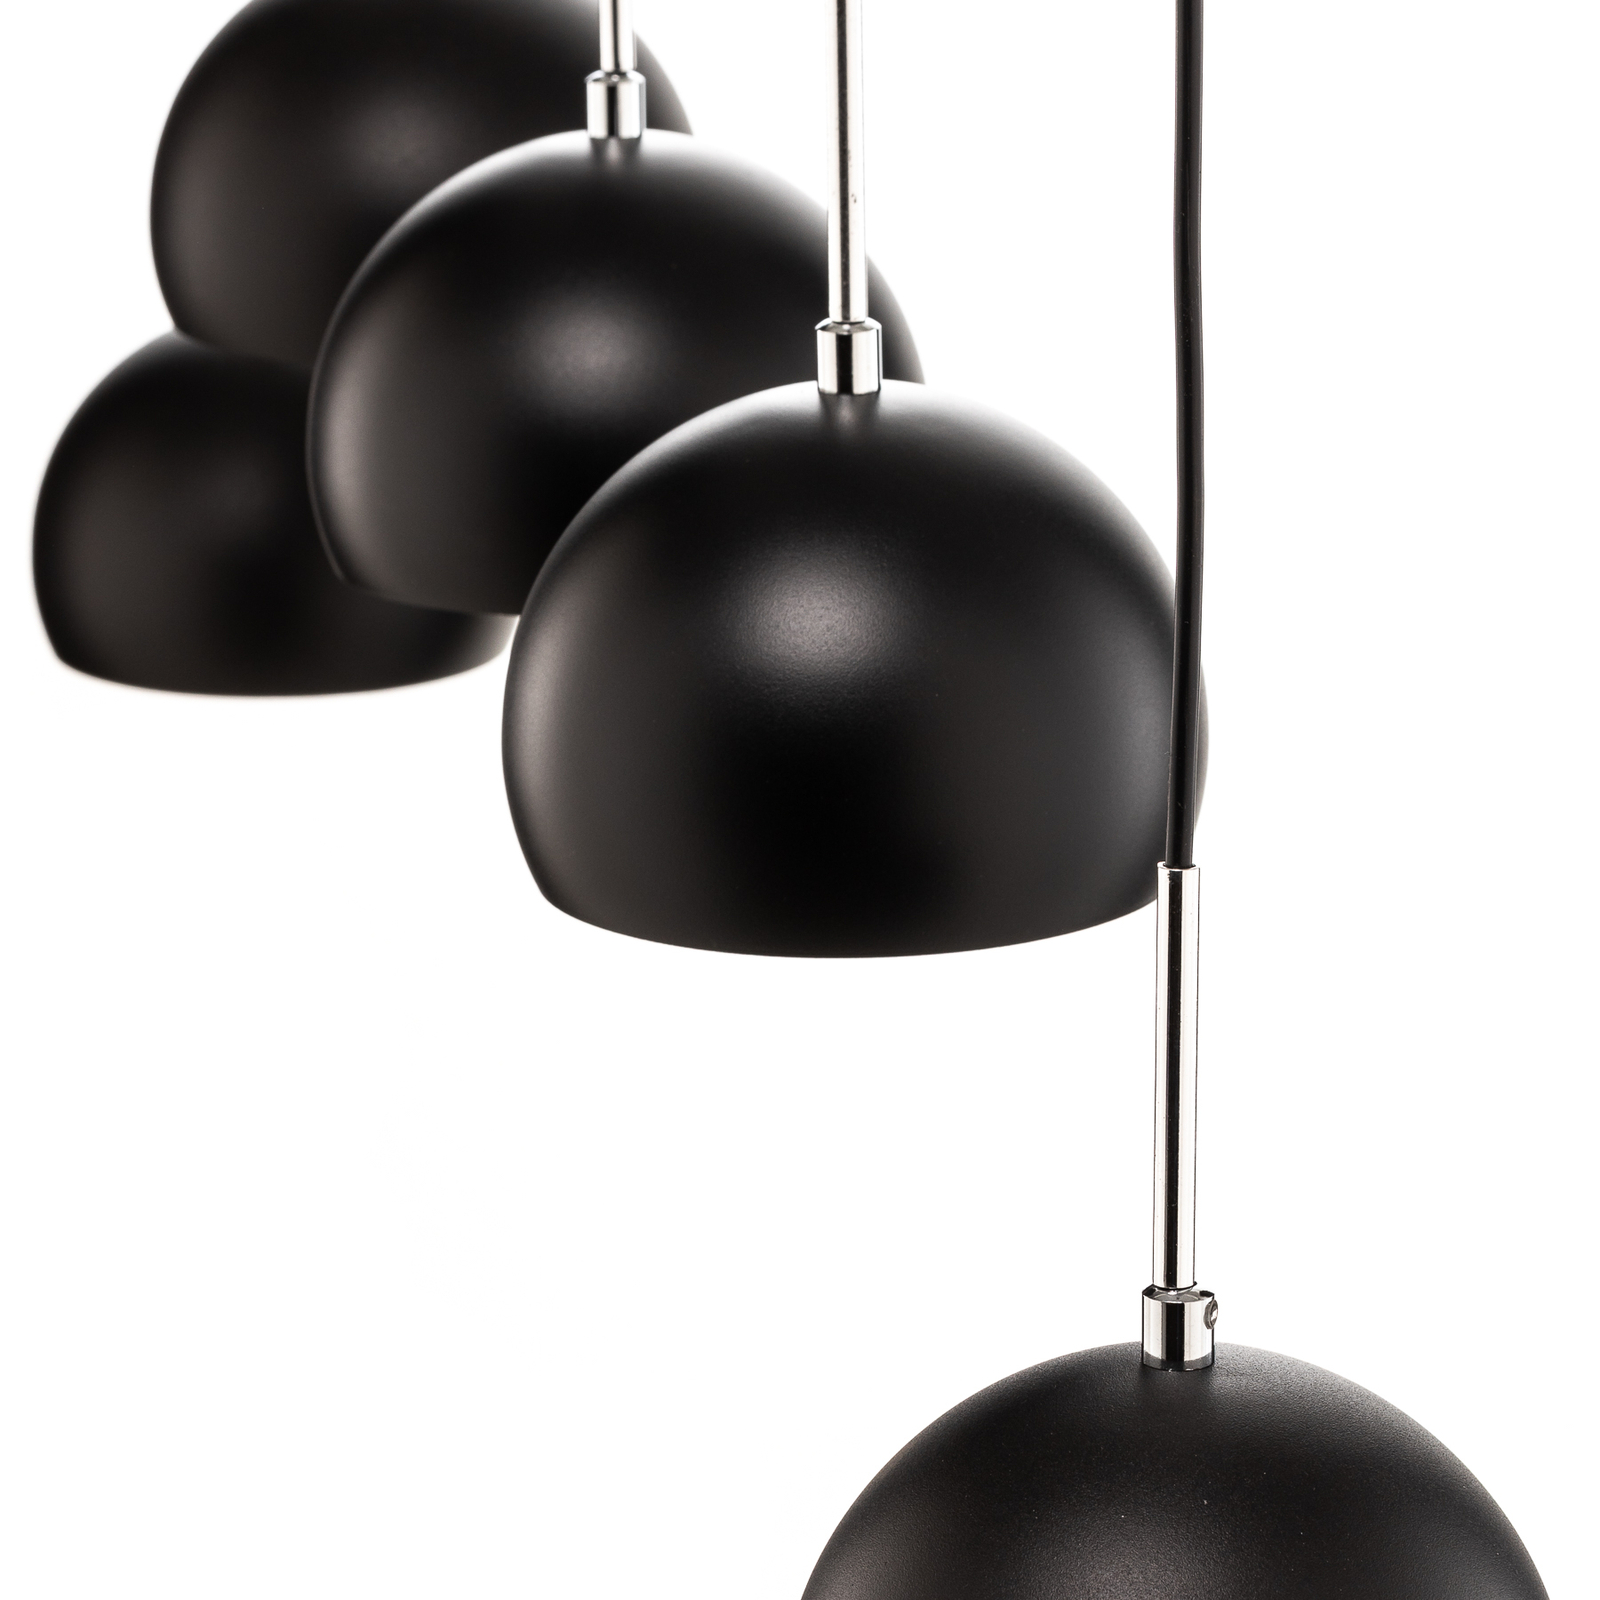 Cool pendant light, 5-bulb long, black